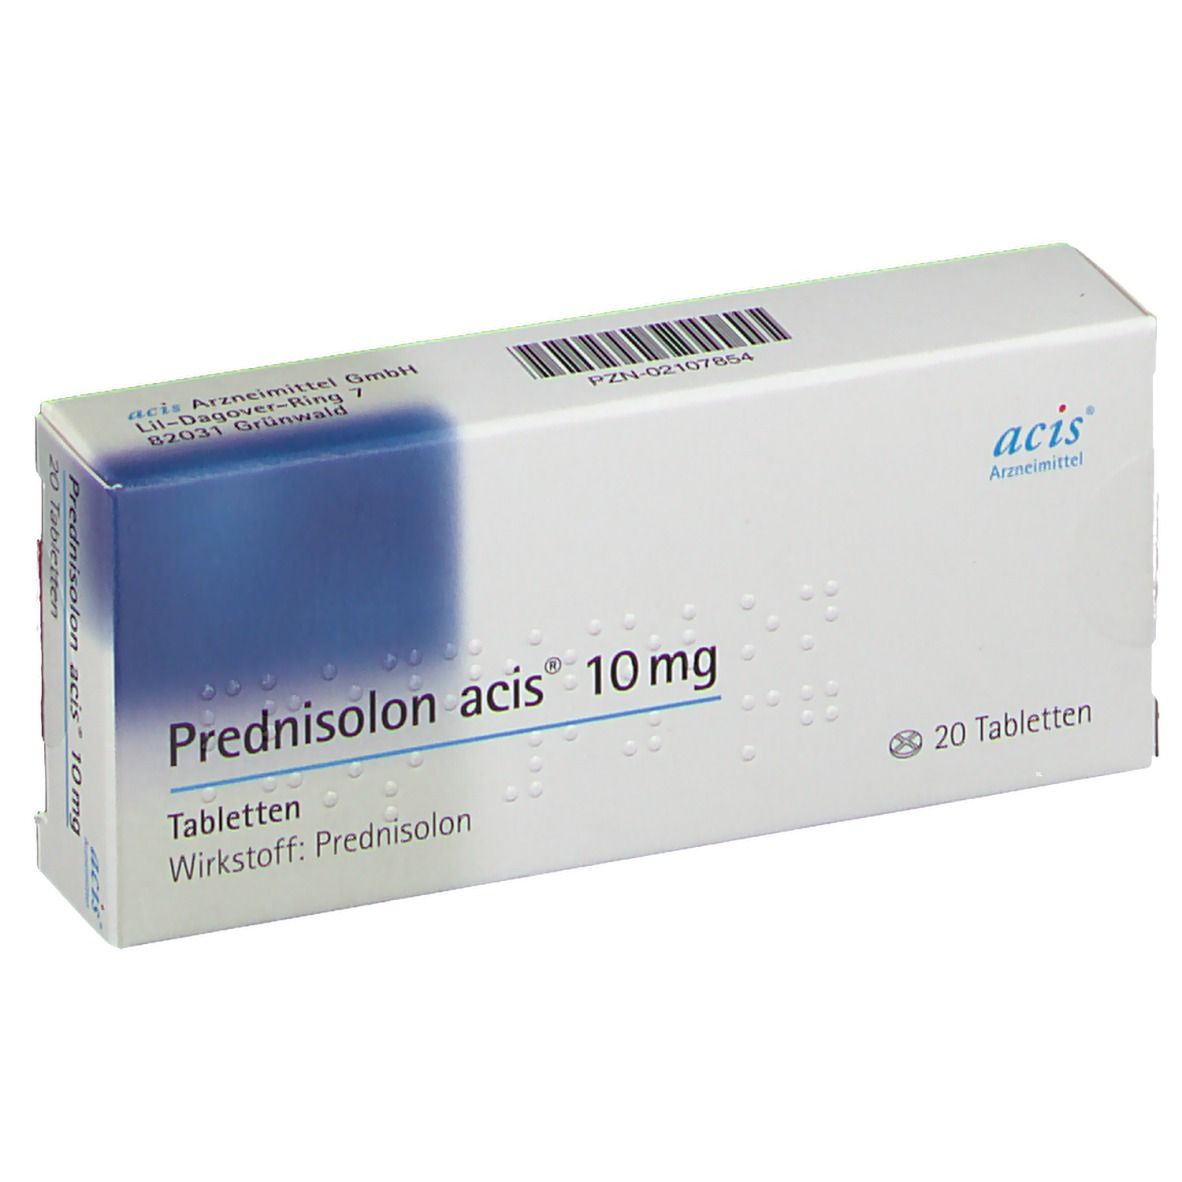 Prednisolon acis® 10Mg